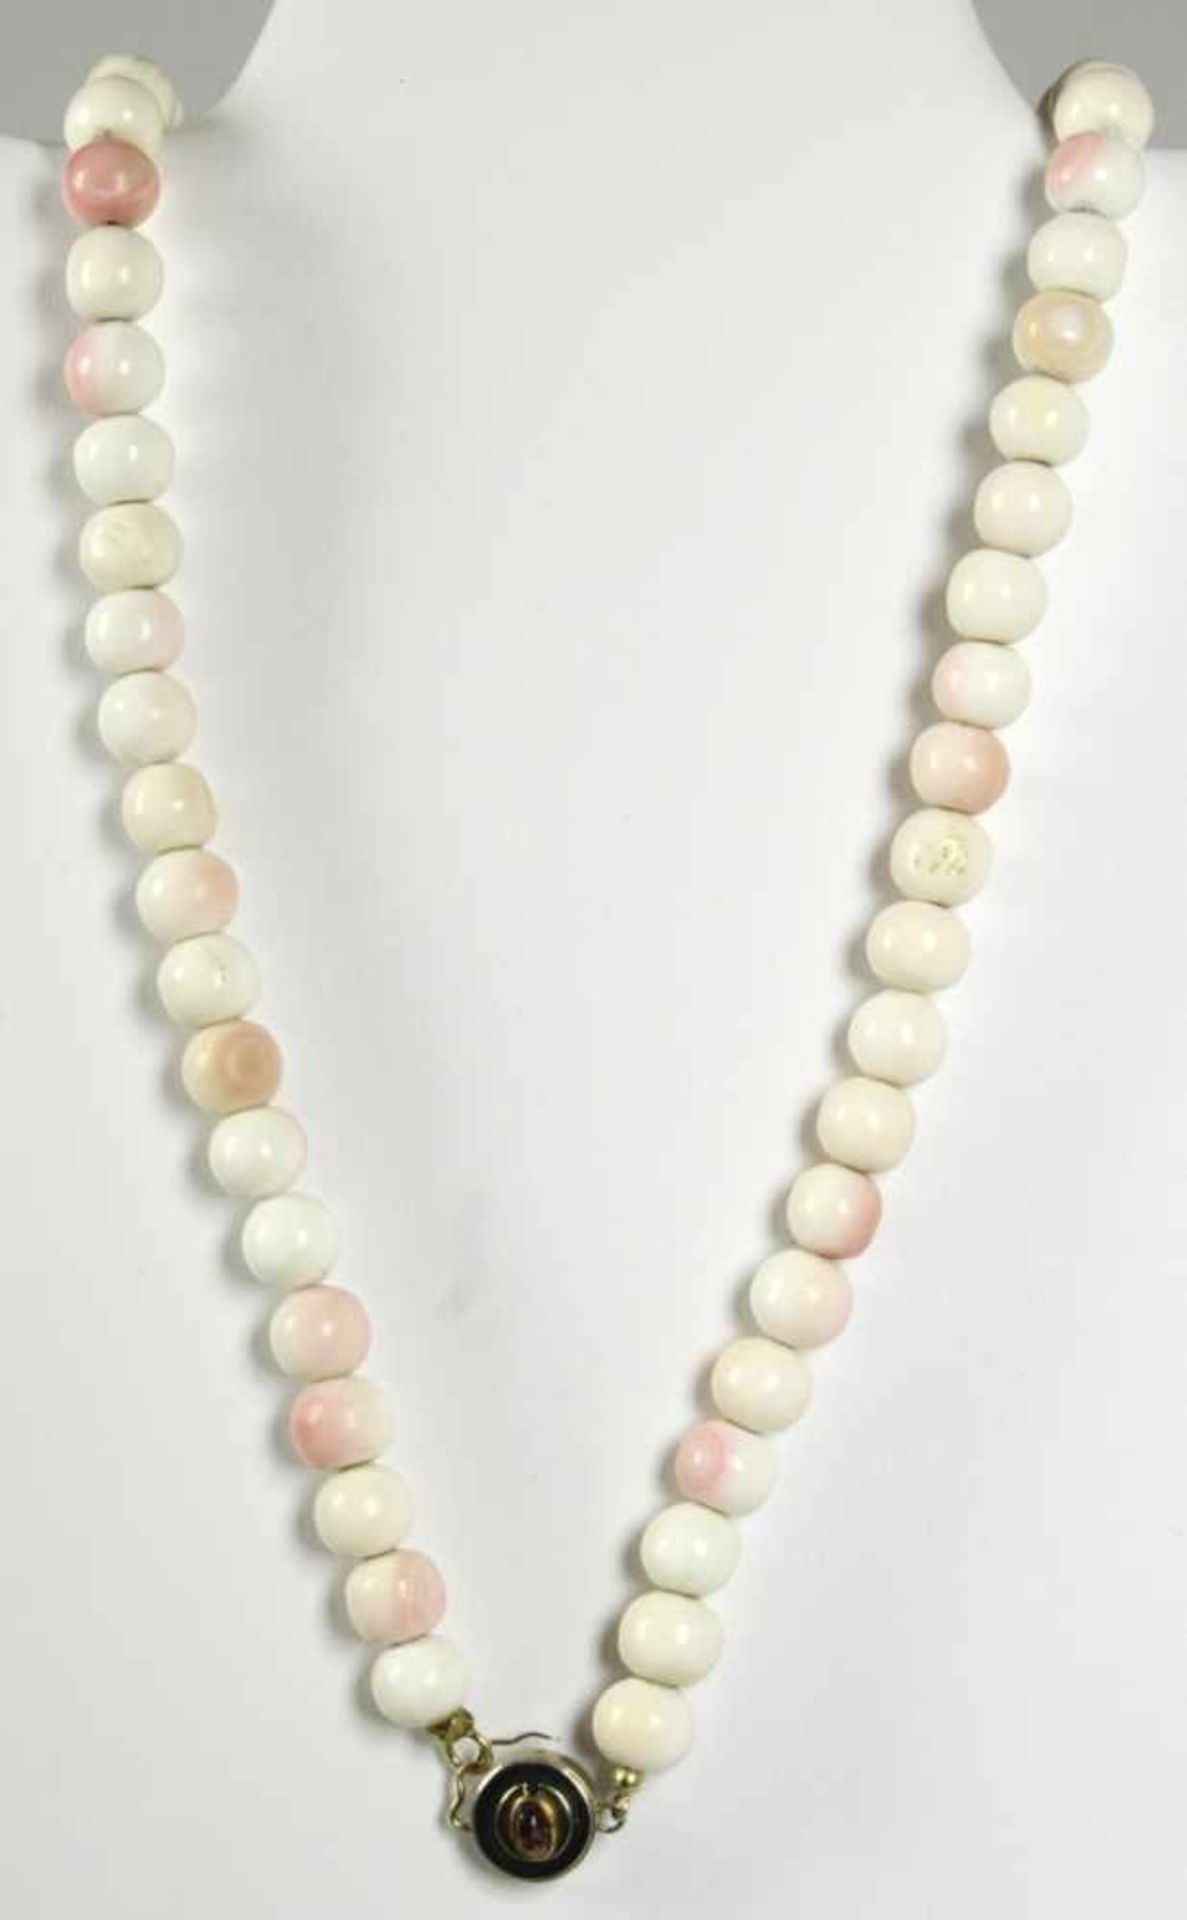 Engelshautkorallen-Halskette, Choker gefädelt, D 11 mm, Farbe: weiß-rose, Rund-Schließemit